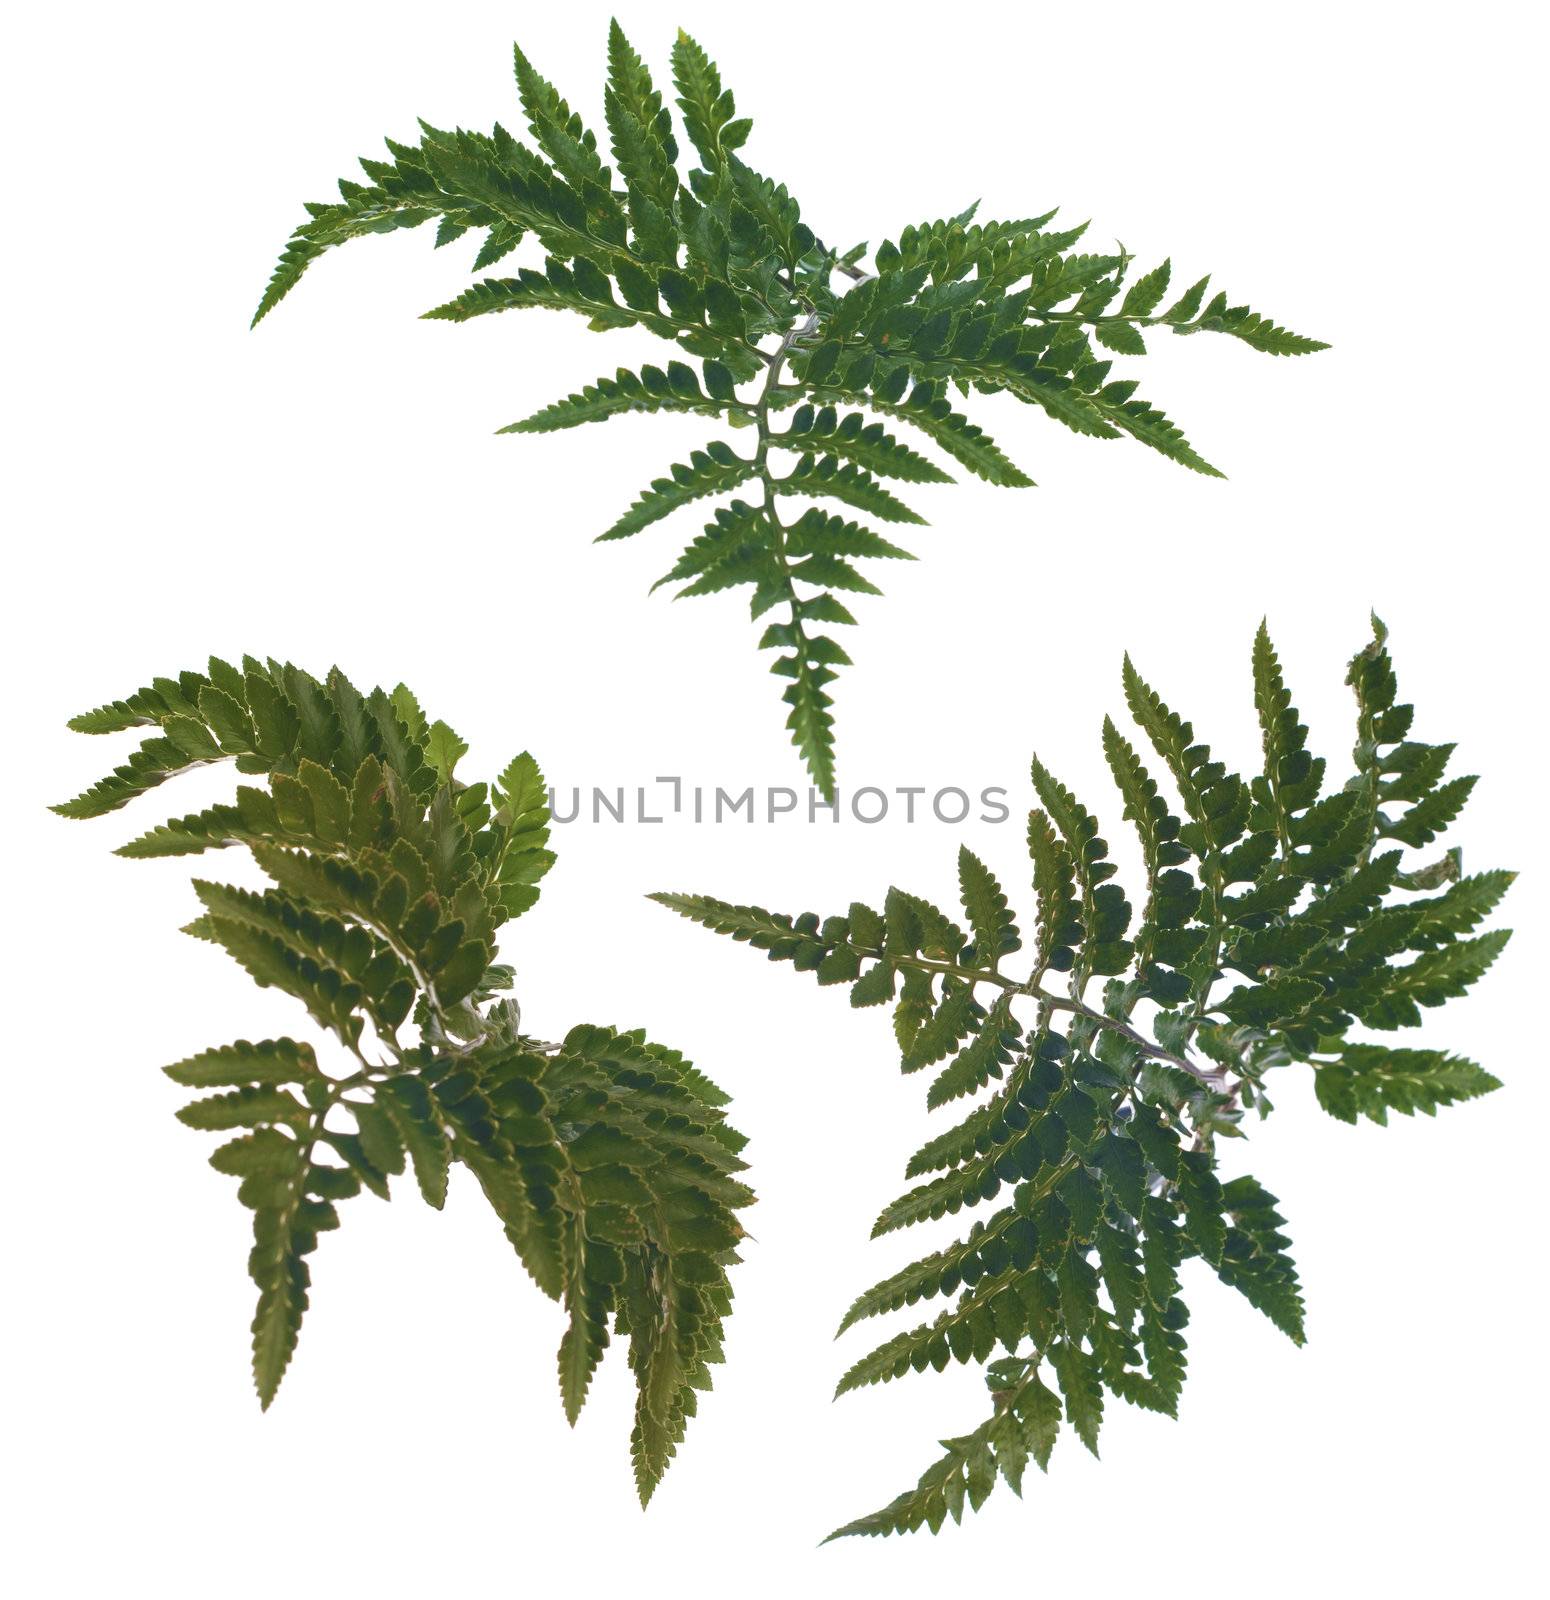 Fern leafs by homydesign